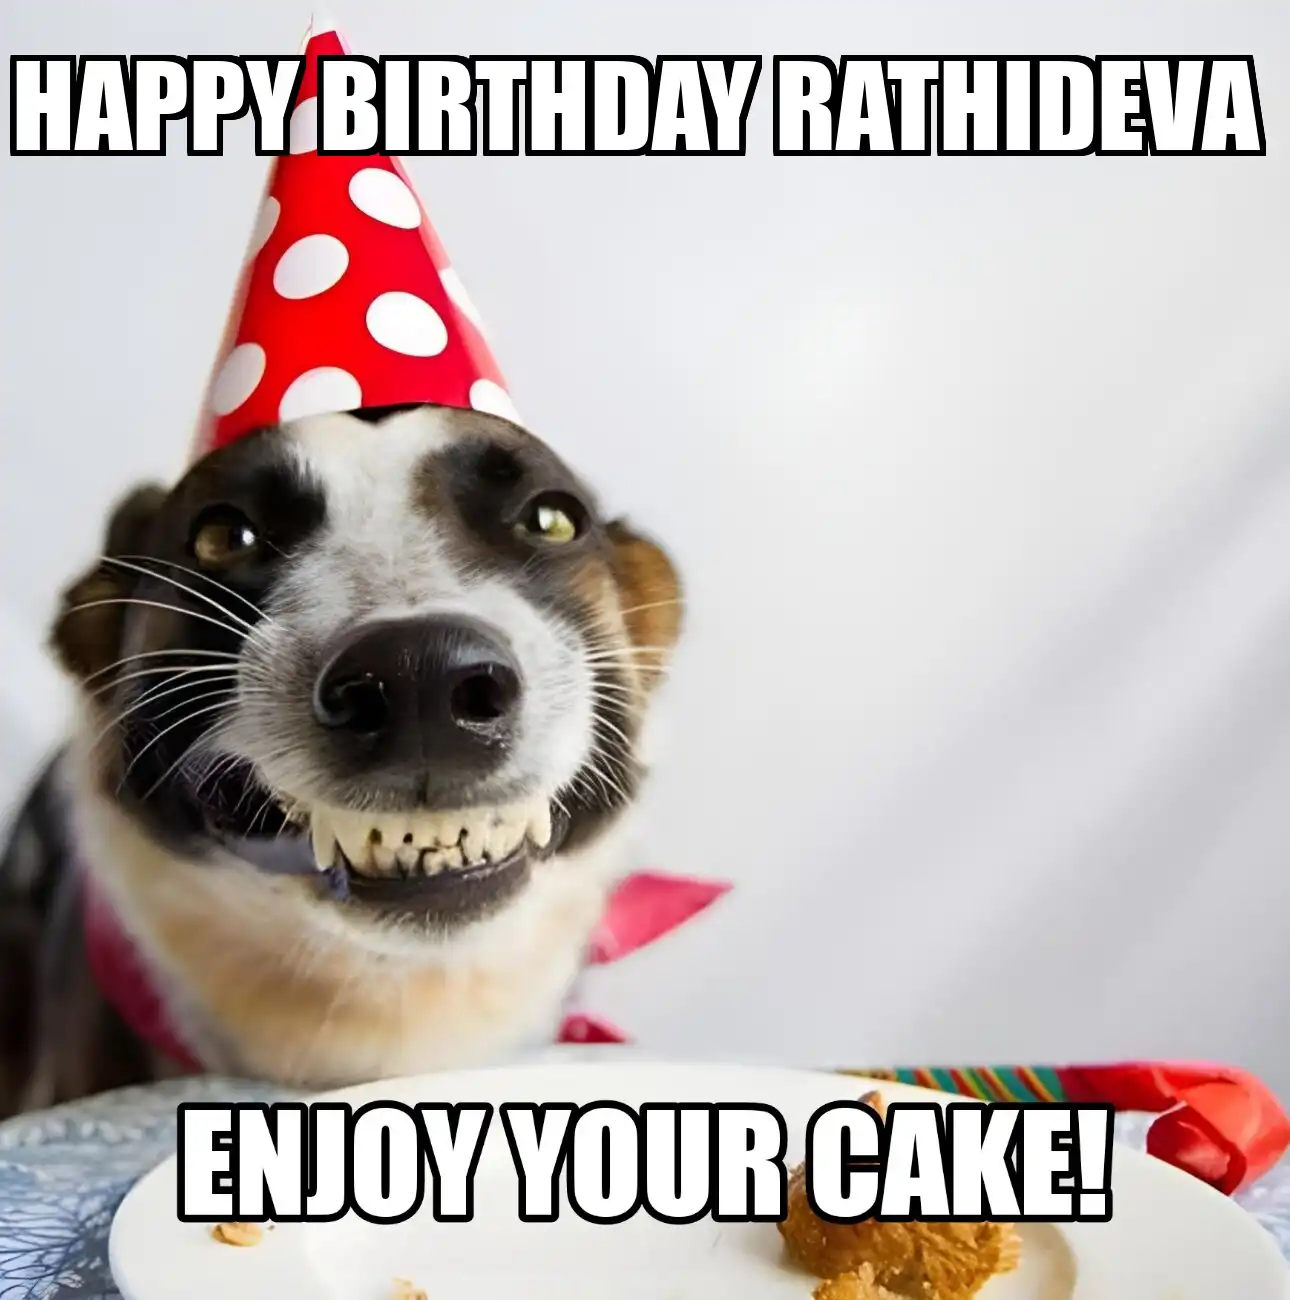 Happy Birthday Rathideva Enjoy Your Cake Dog Meme